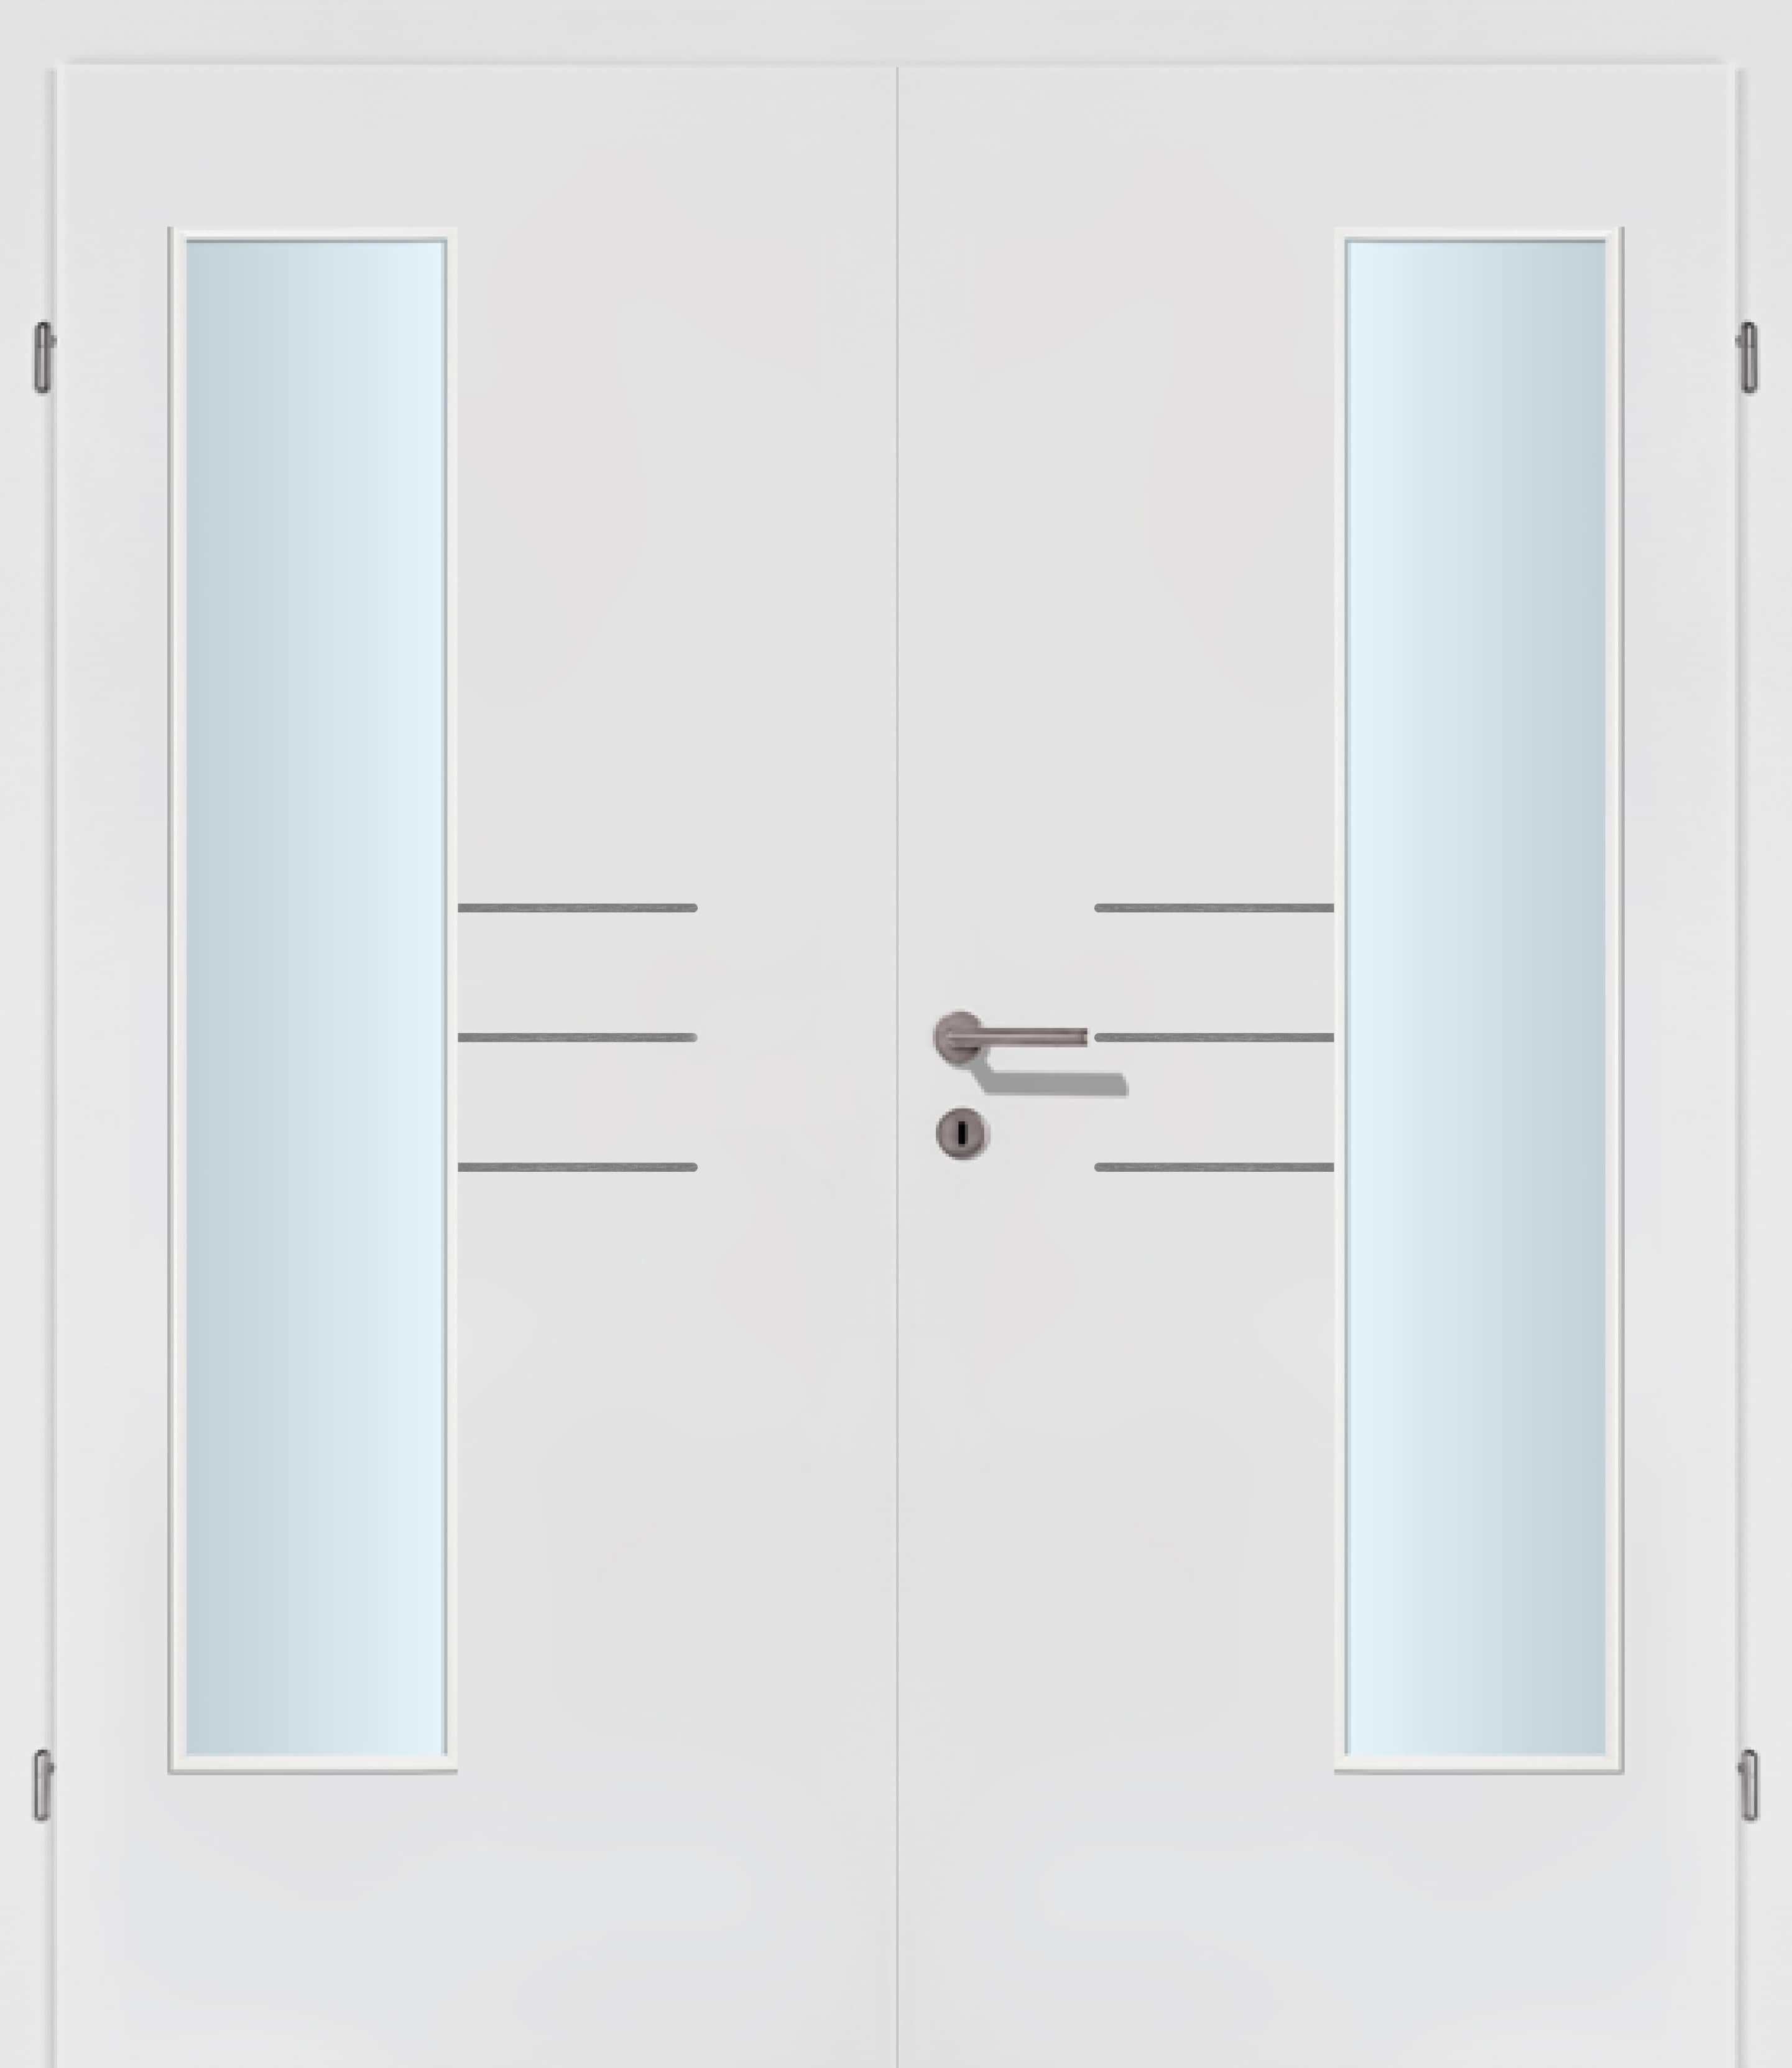 Selektion T50 Alu Effekt Lisenen weiss Innentür Inkl. Zarge (Türrahmen) Doppeltüre Inkl. Glaslichte EN Bandseitig